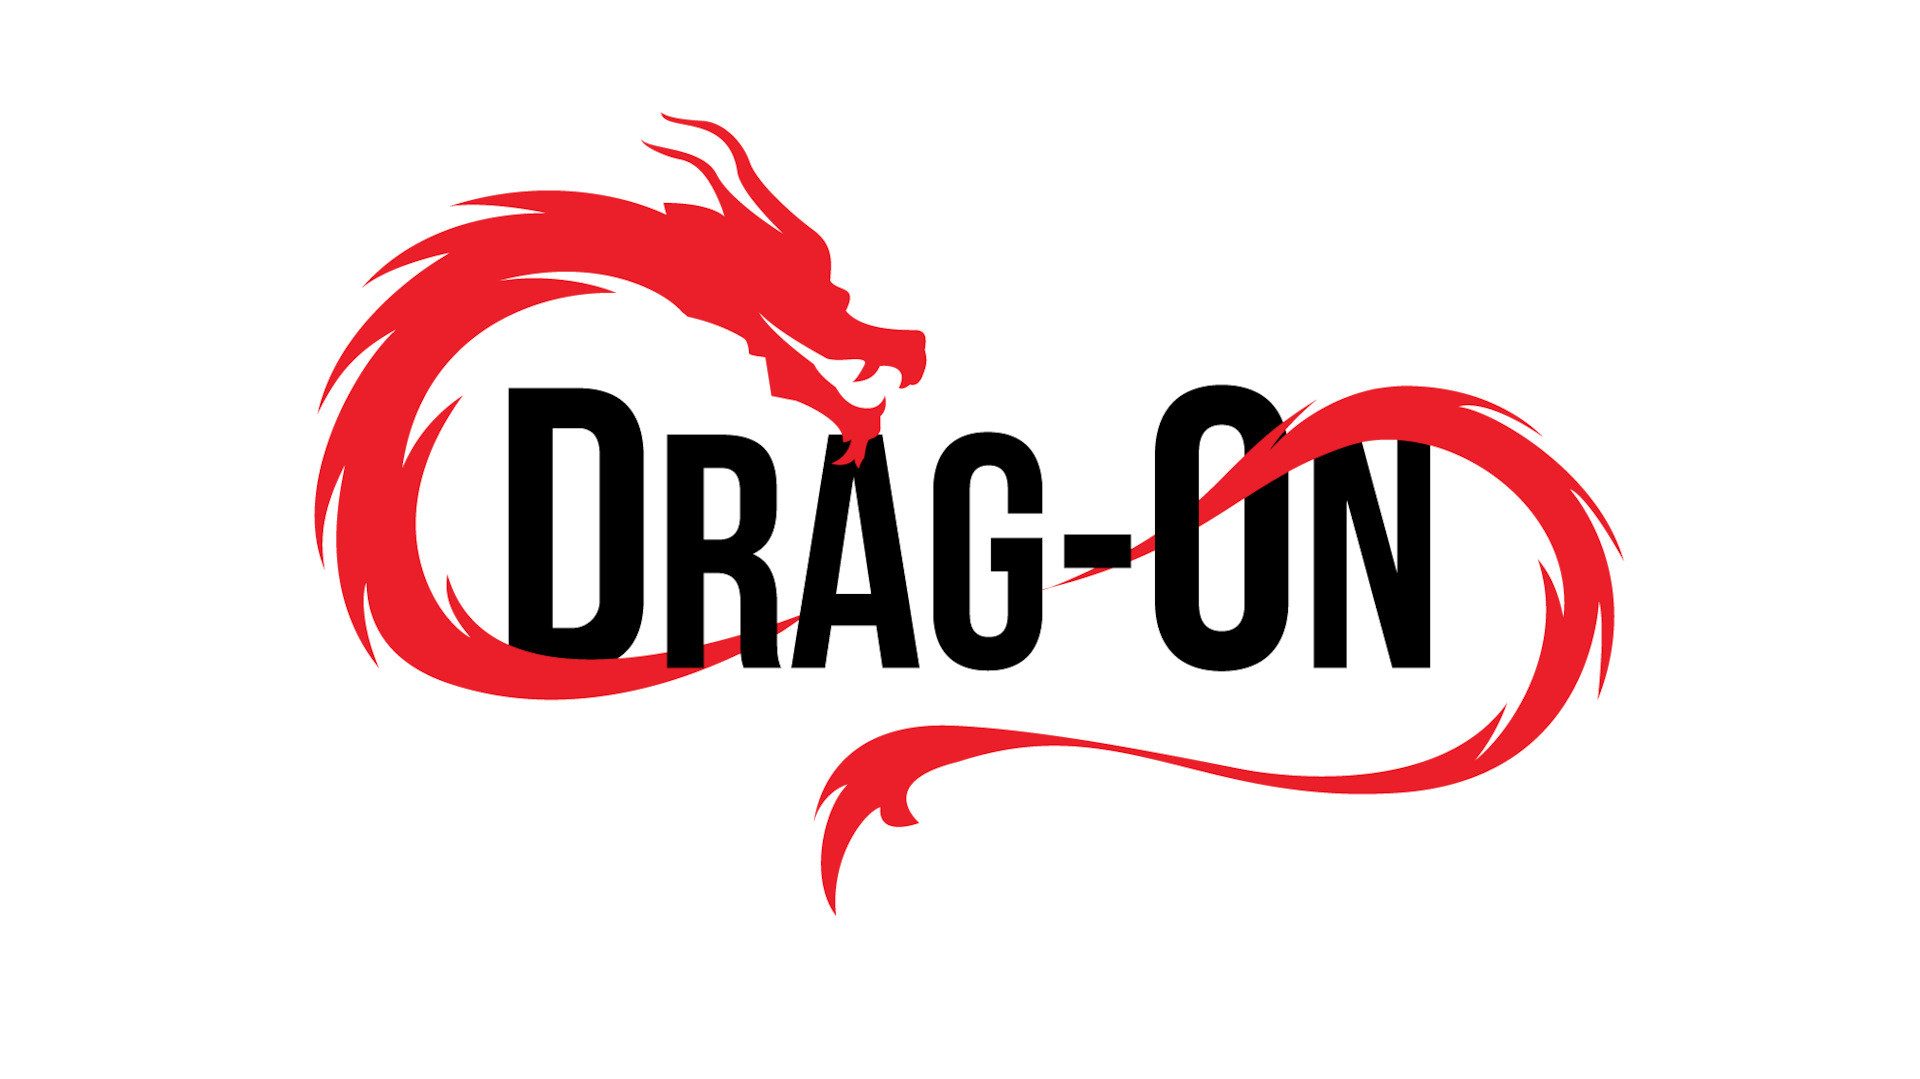 Sale dragon. Drag Dragon.